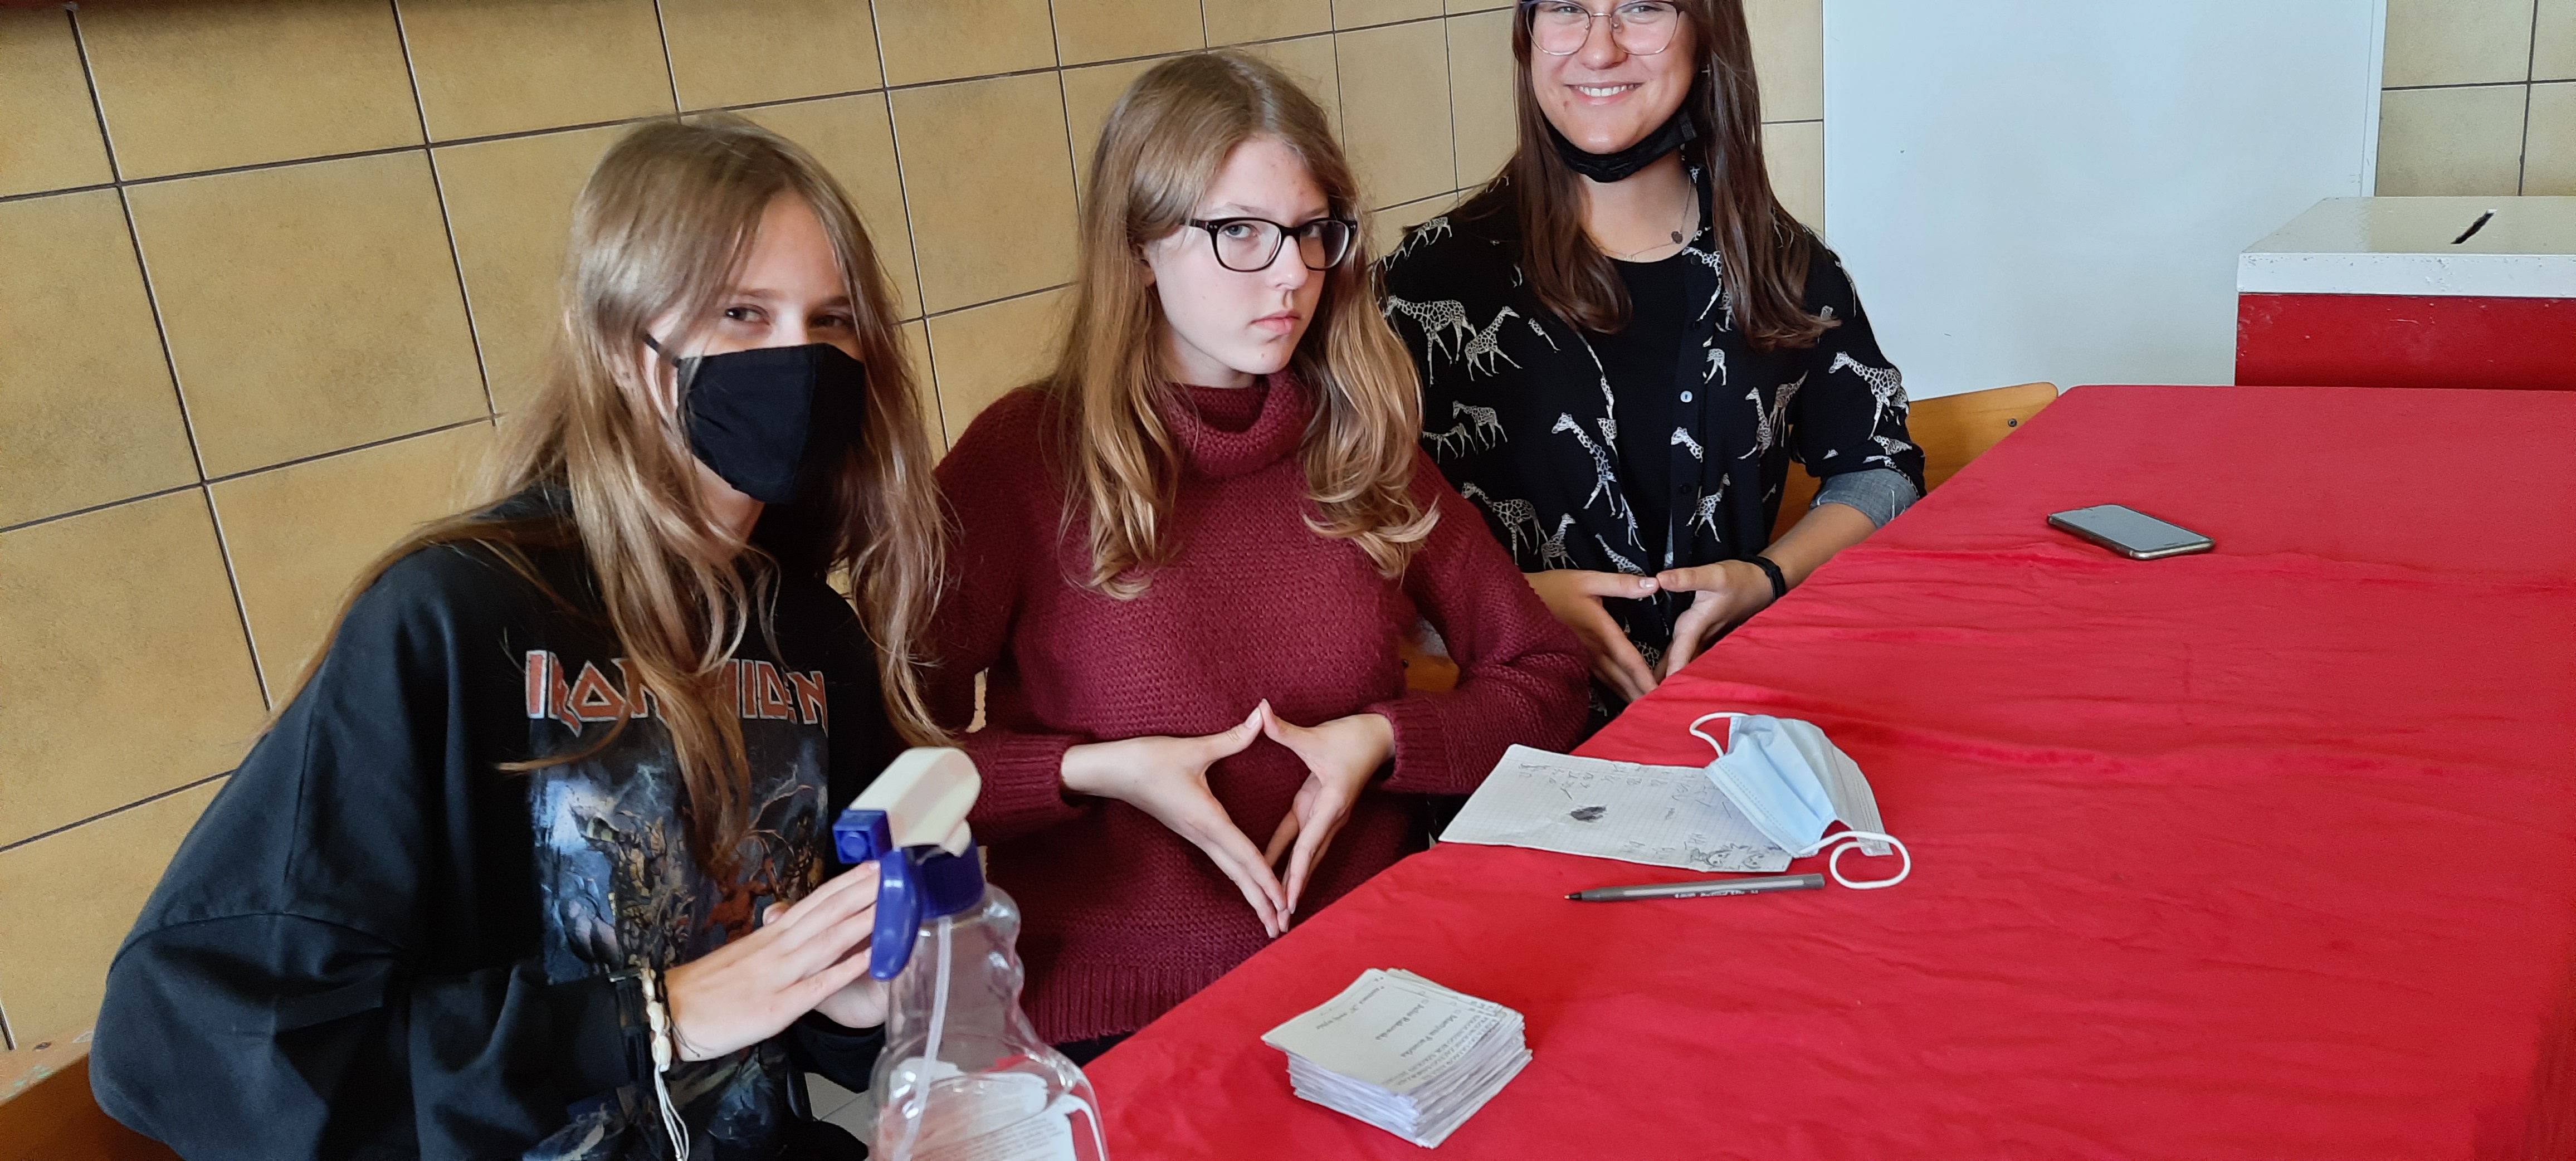 Trzy nastolatki siedzą przy czerwonym stole